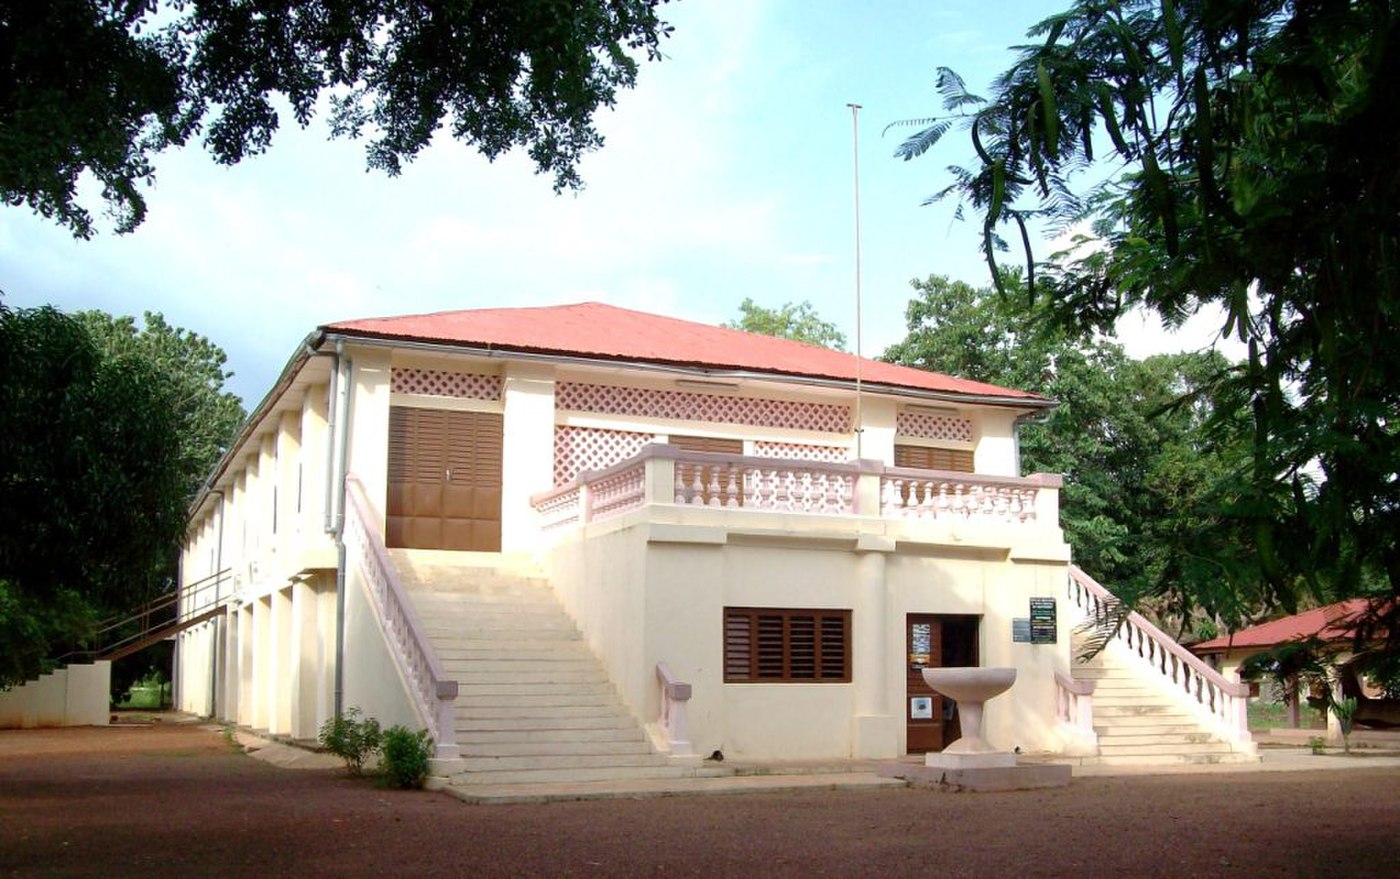 Le musée Régional de Natitingou